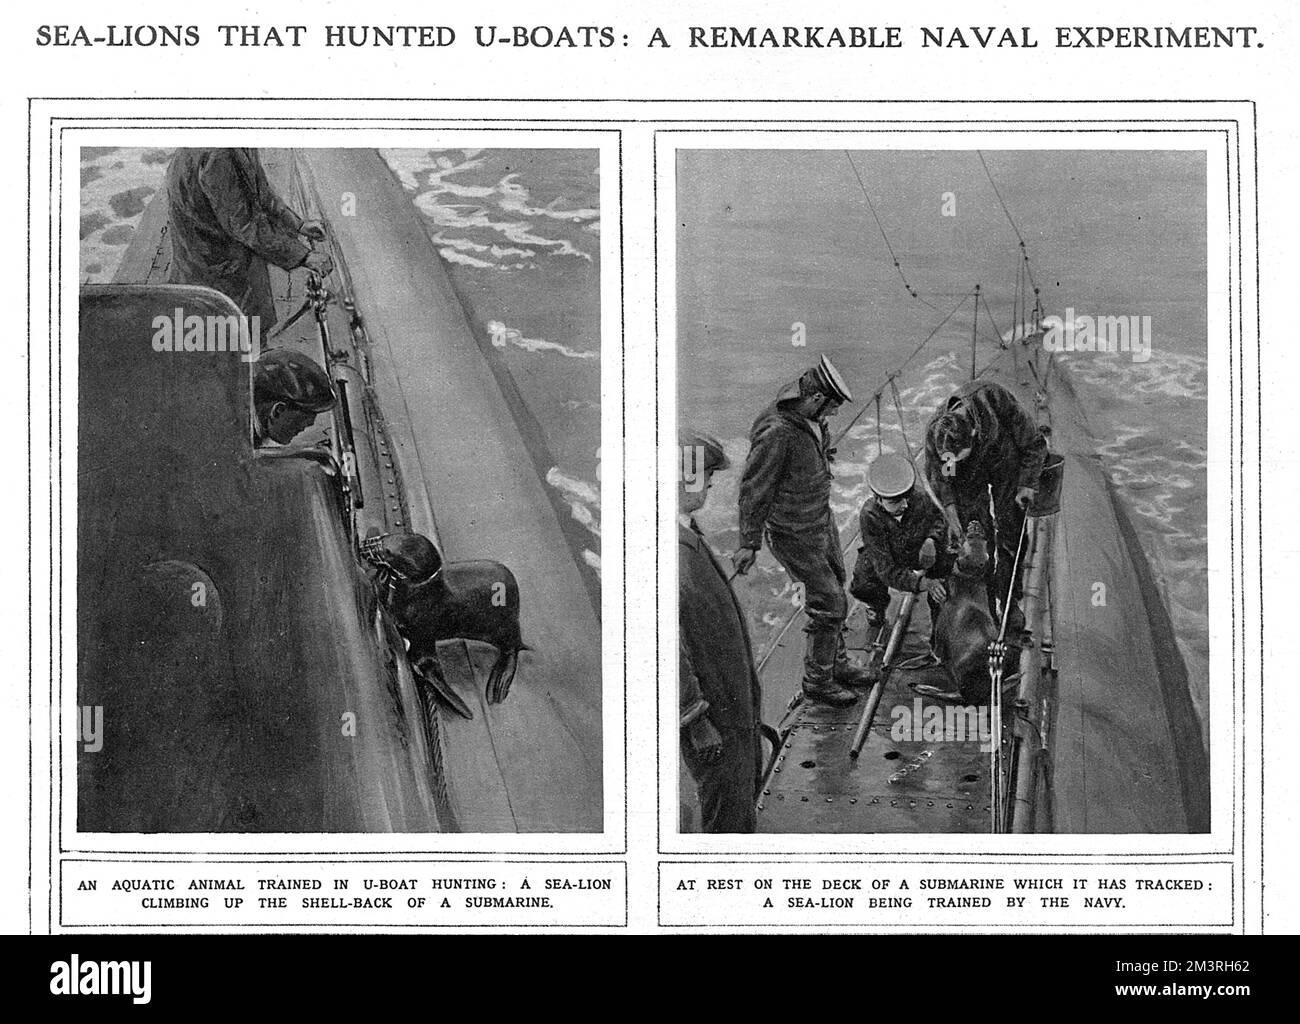 Nach dem Krieg kam ein bemerkenswertes Marineexperiment ans Licht, das so unwahrscheinlich war, dass die illustrierten London News, als sie davon erfuhren, es für einen Schwindel hielten. Der Vorschlag, Seelöwen zu trainieren, sei auf U-Boote ausgebildet, schien weit hergeholt. Nach einer gründlichen Untersuchung waren sie jedoch mit der Echtheit so zufrieden, dass sie im April 1919 eine üppige Verbreitung veröffentlicht haben. Im Sommer 1917 erfand die Admiralität eine neue Art der Jagd auf U-Boote. Es ging einfach darum, zähme Seelöwen (Otaria Gillespie) zu beschäftigen, um sie aufzuspüren - die Idee war das Stockfoto